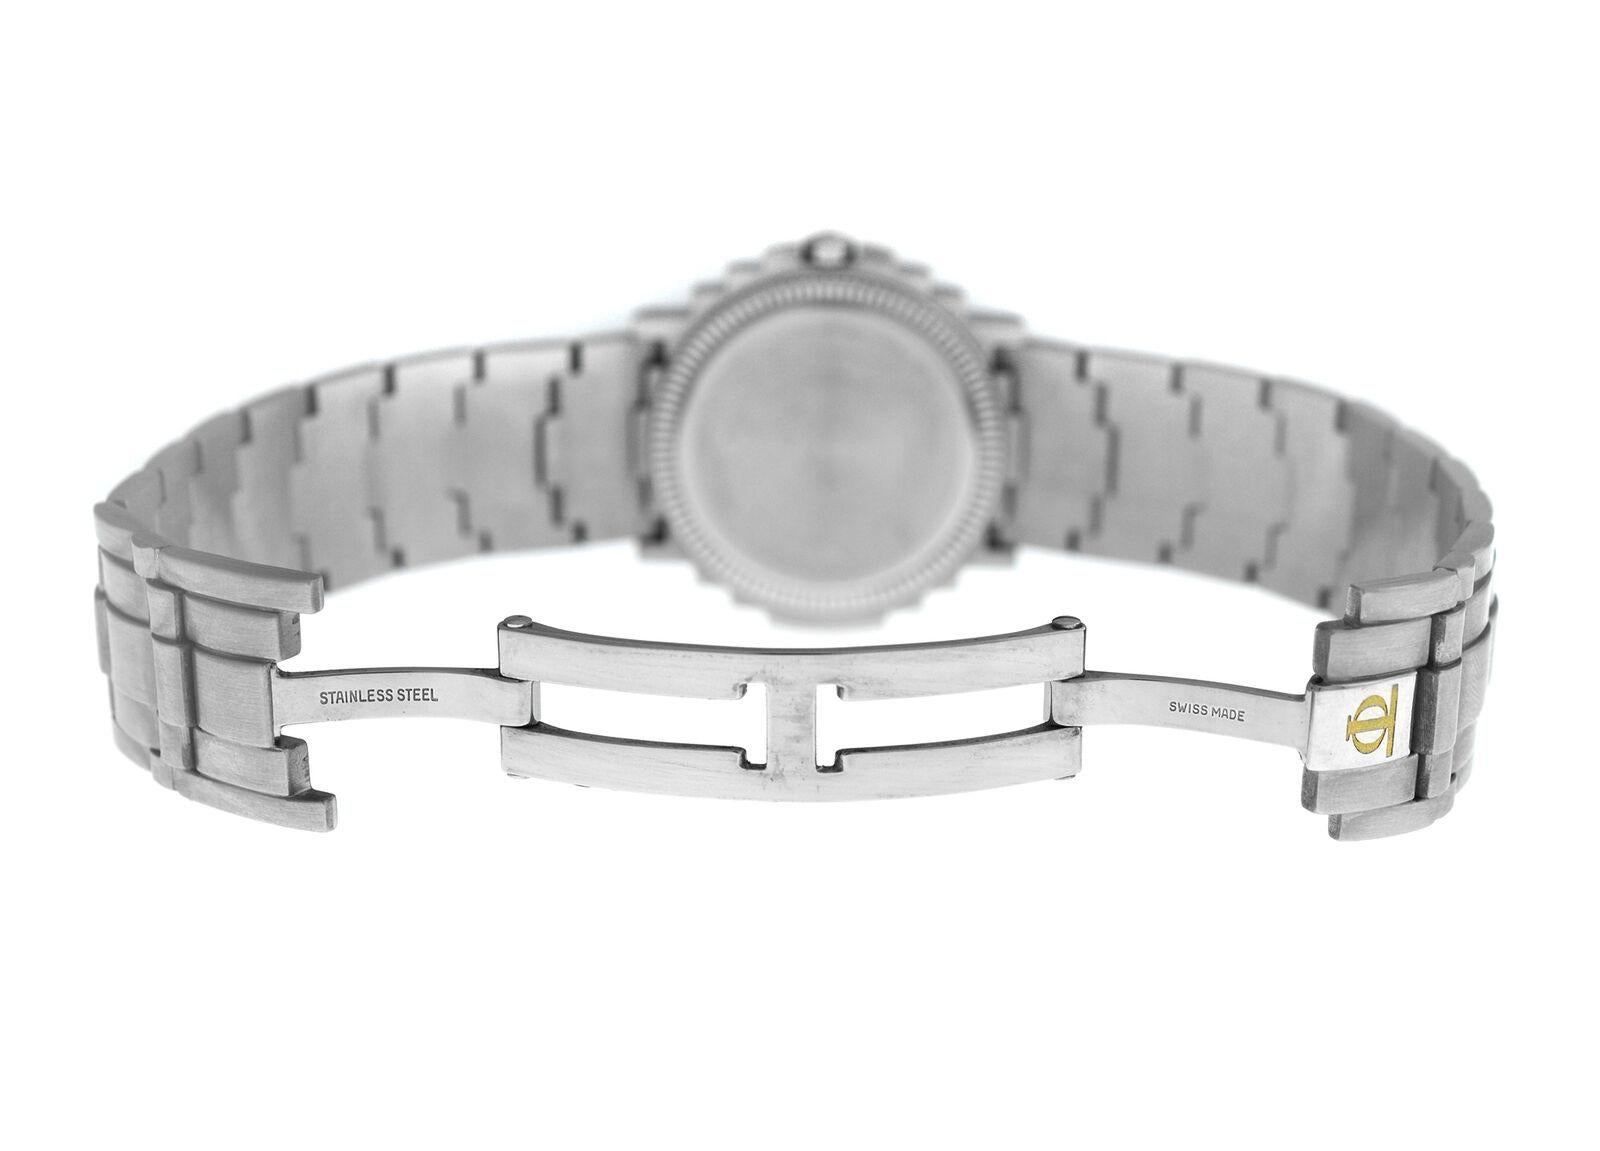 Unisex Baume & Mercier Shogun 5136.018.3 Stainless Quartz Watch 1